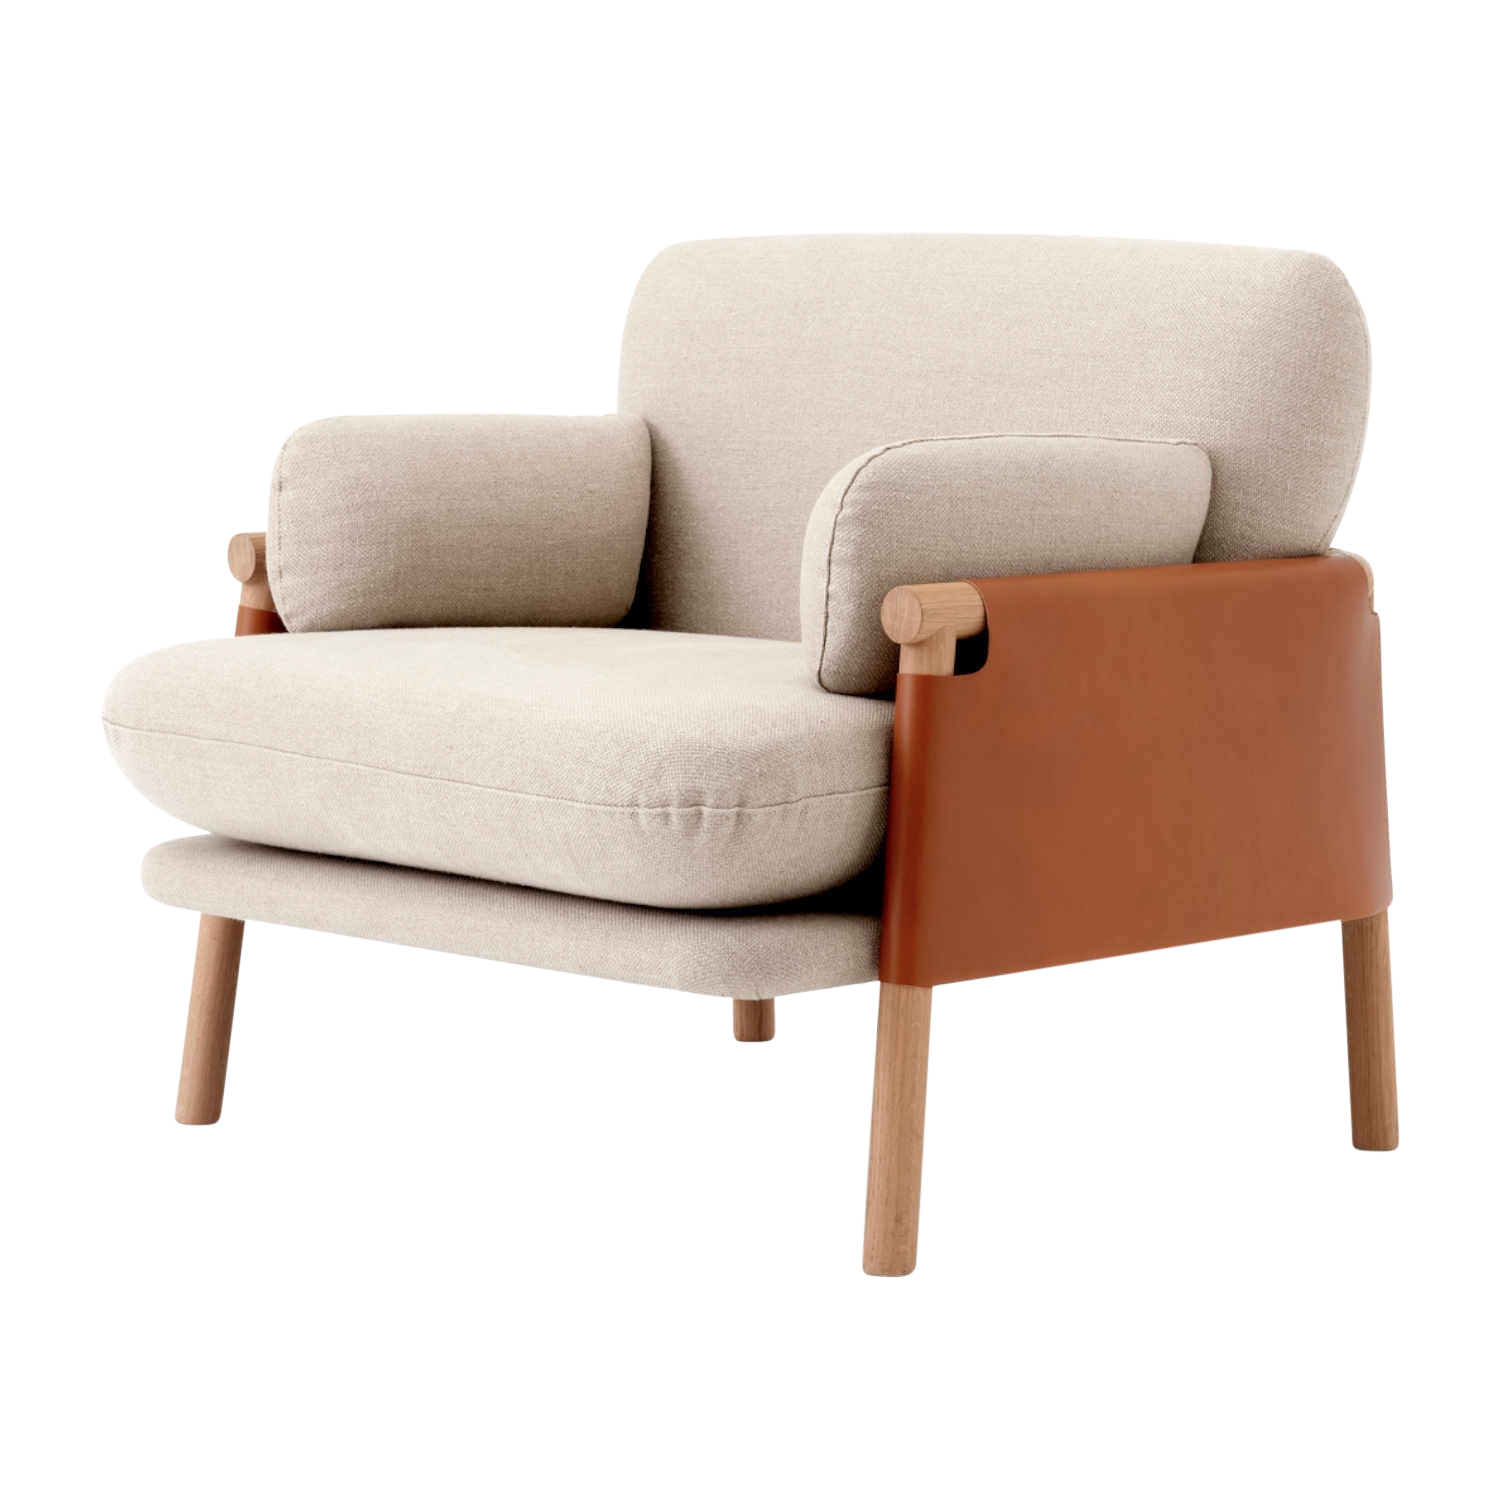 Savannah 8801 Lounge Chair Sessel, Bezug Sitzpolster stoff remix3 - 163 warm grey, Rahmenbezug sattelleder cognac, Gestell eiche hell geölt von Fredericia